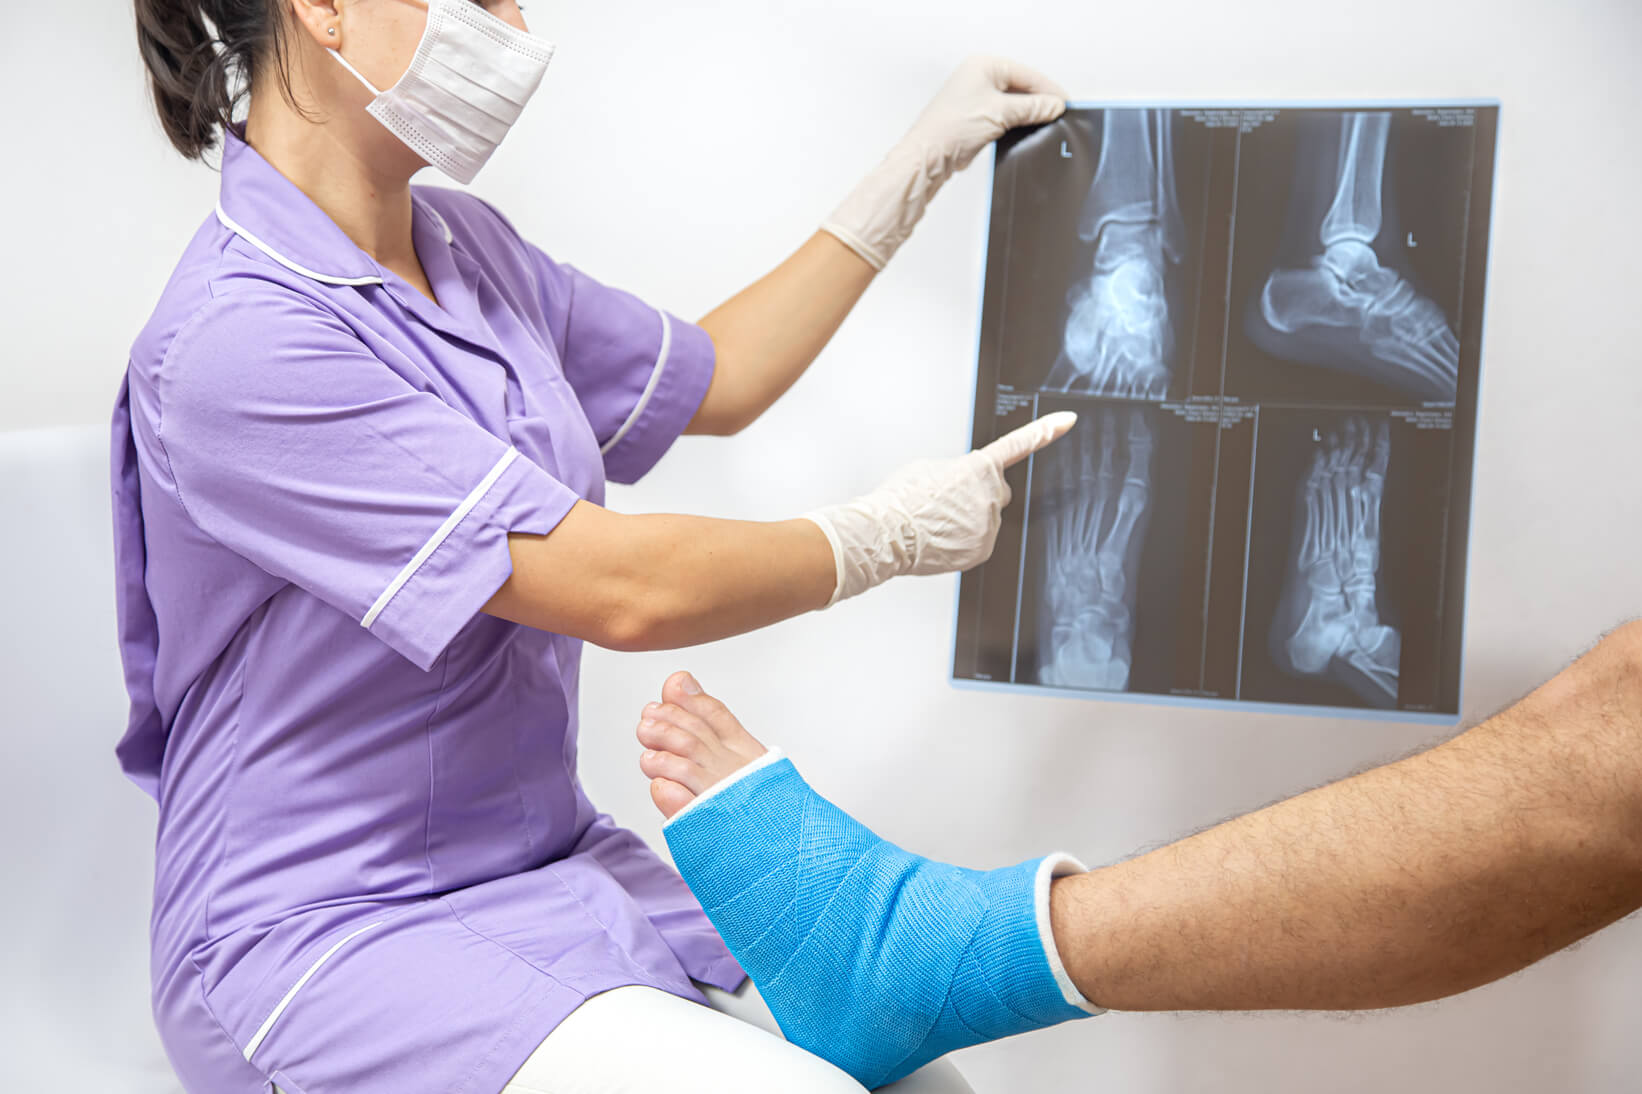 Doctora le enseña al paciente una radiografía del tobillo donde se aprecia una rotura ósea